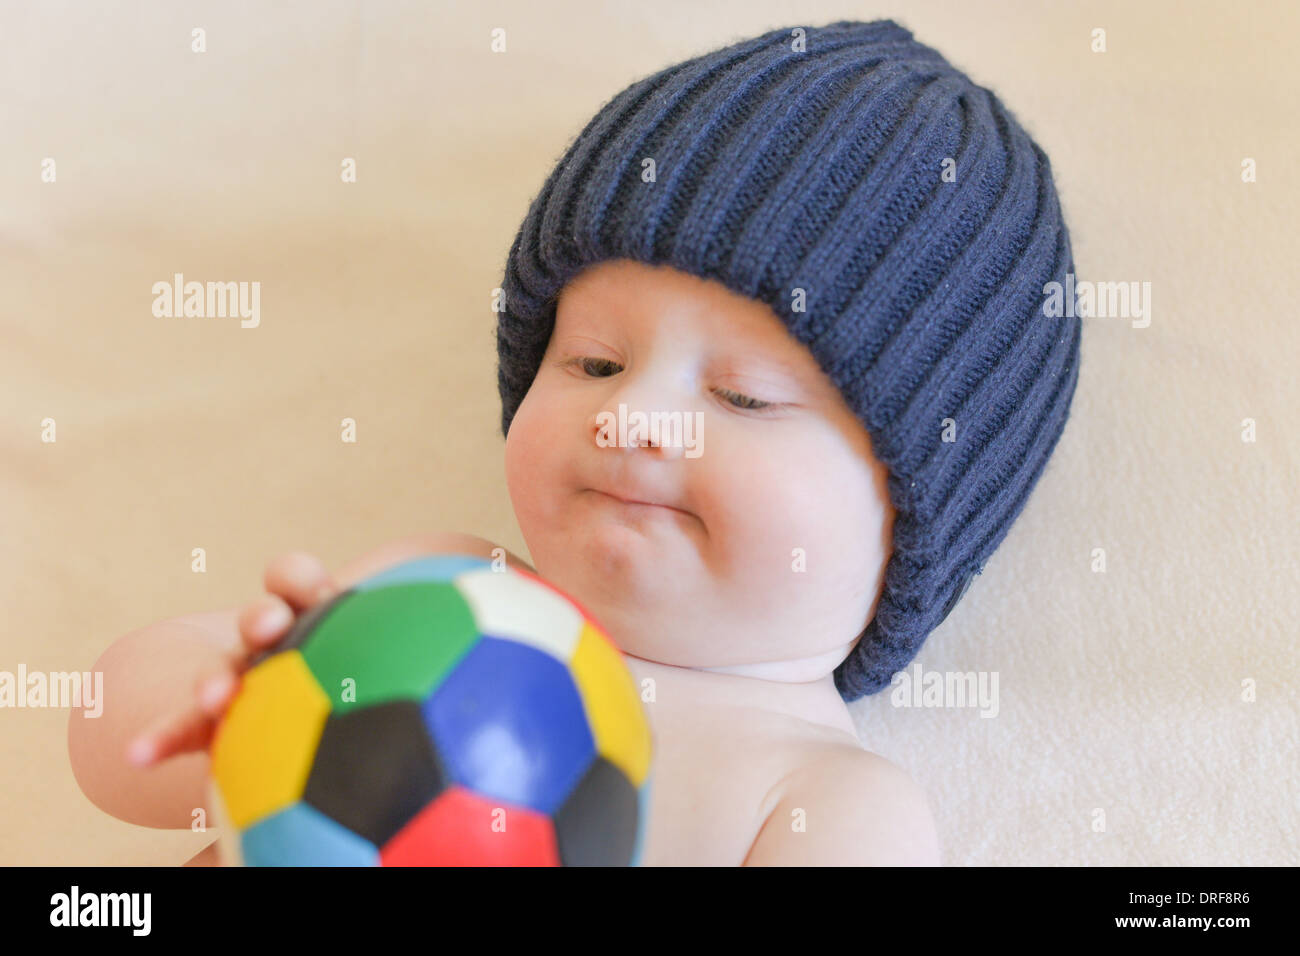 Ritratto di sette mesi di età bambino guardando curioso alla fotocamera Foto Stock